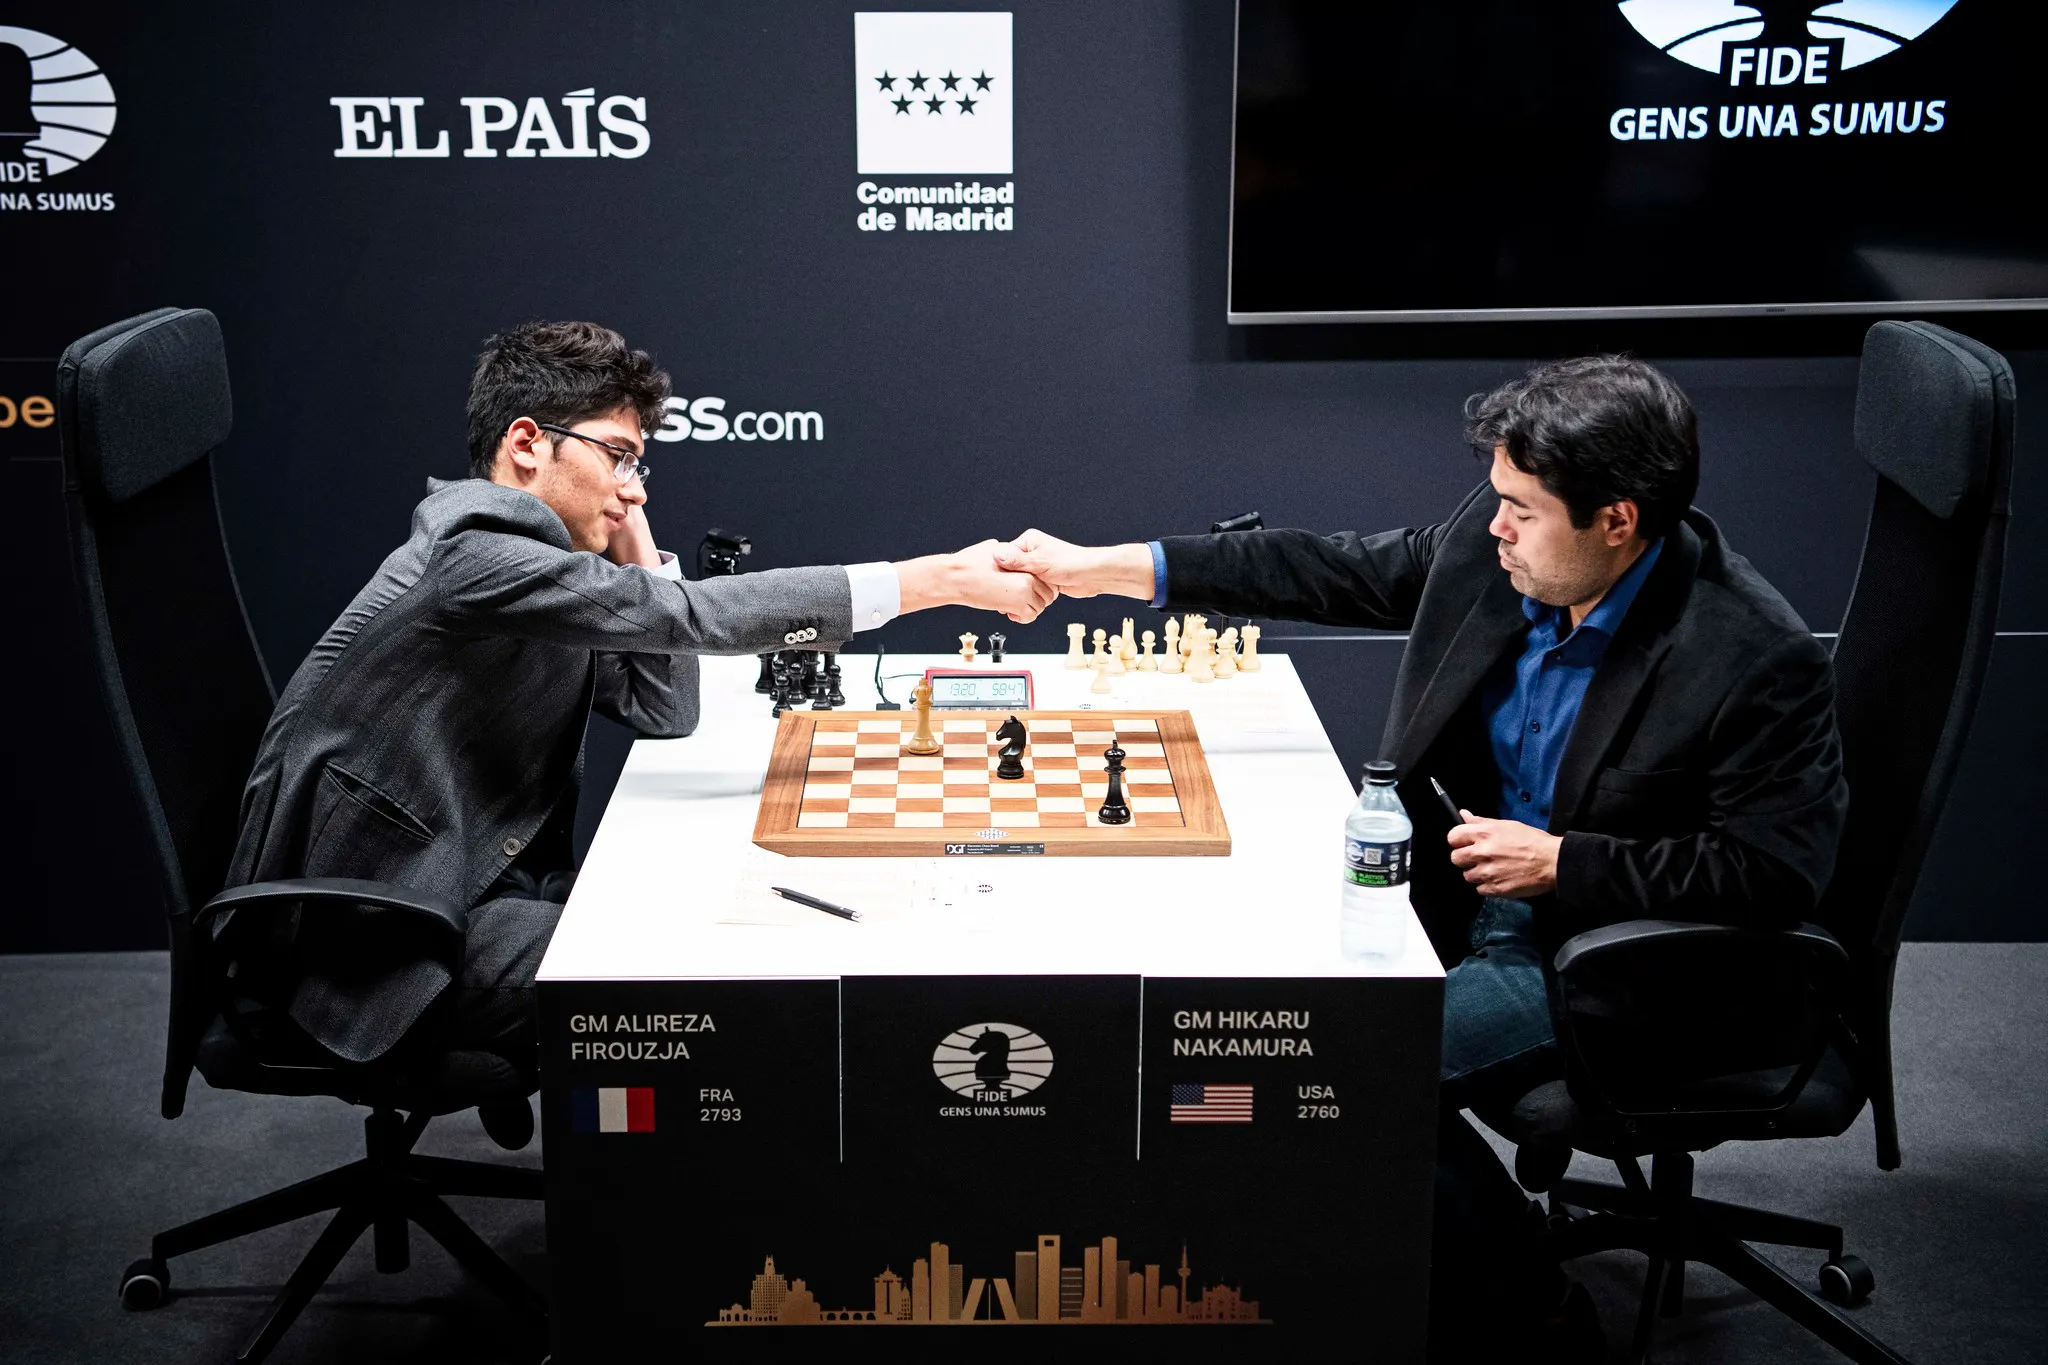 Chess: Hikaru Nakamura snatches final round victory from Fabiano